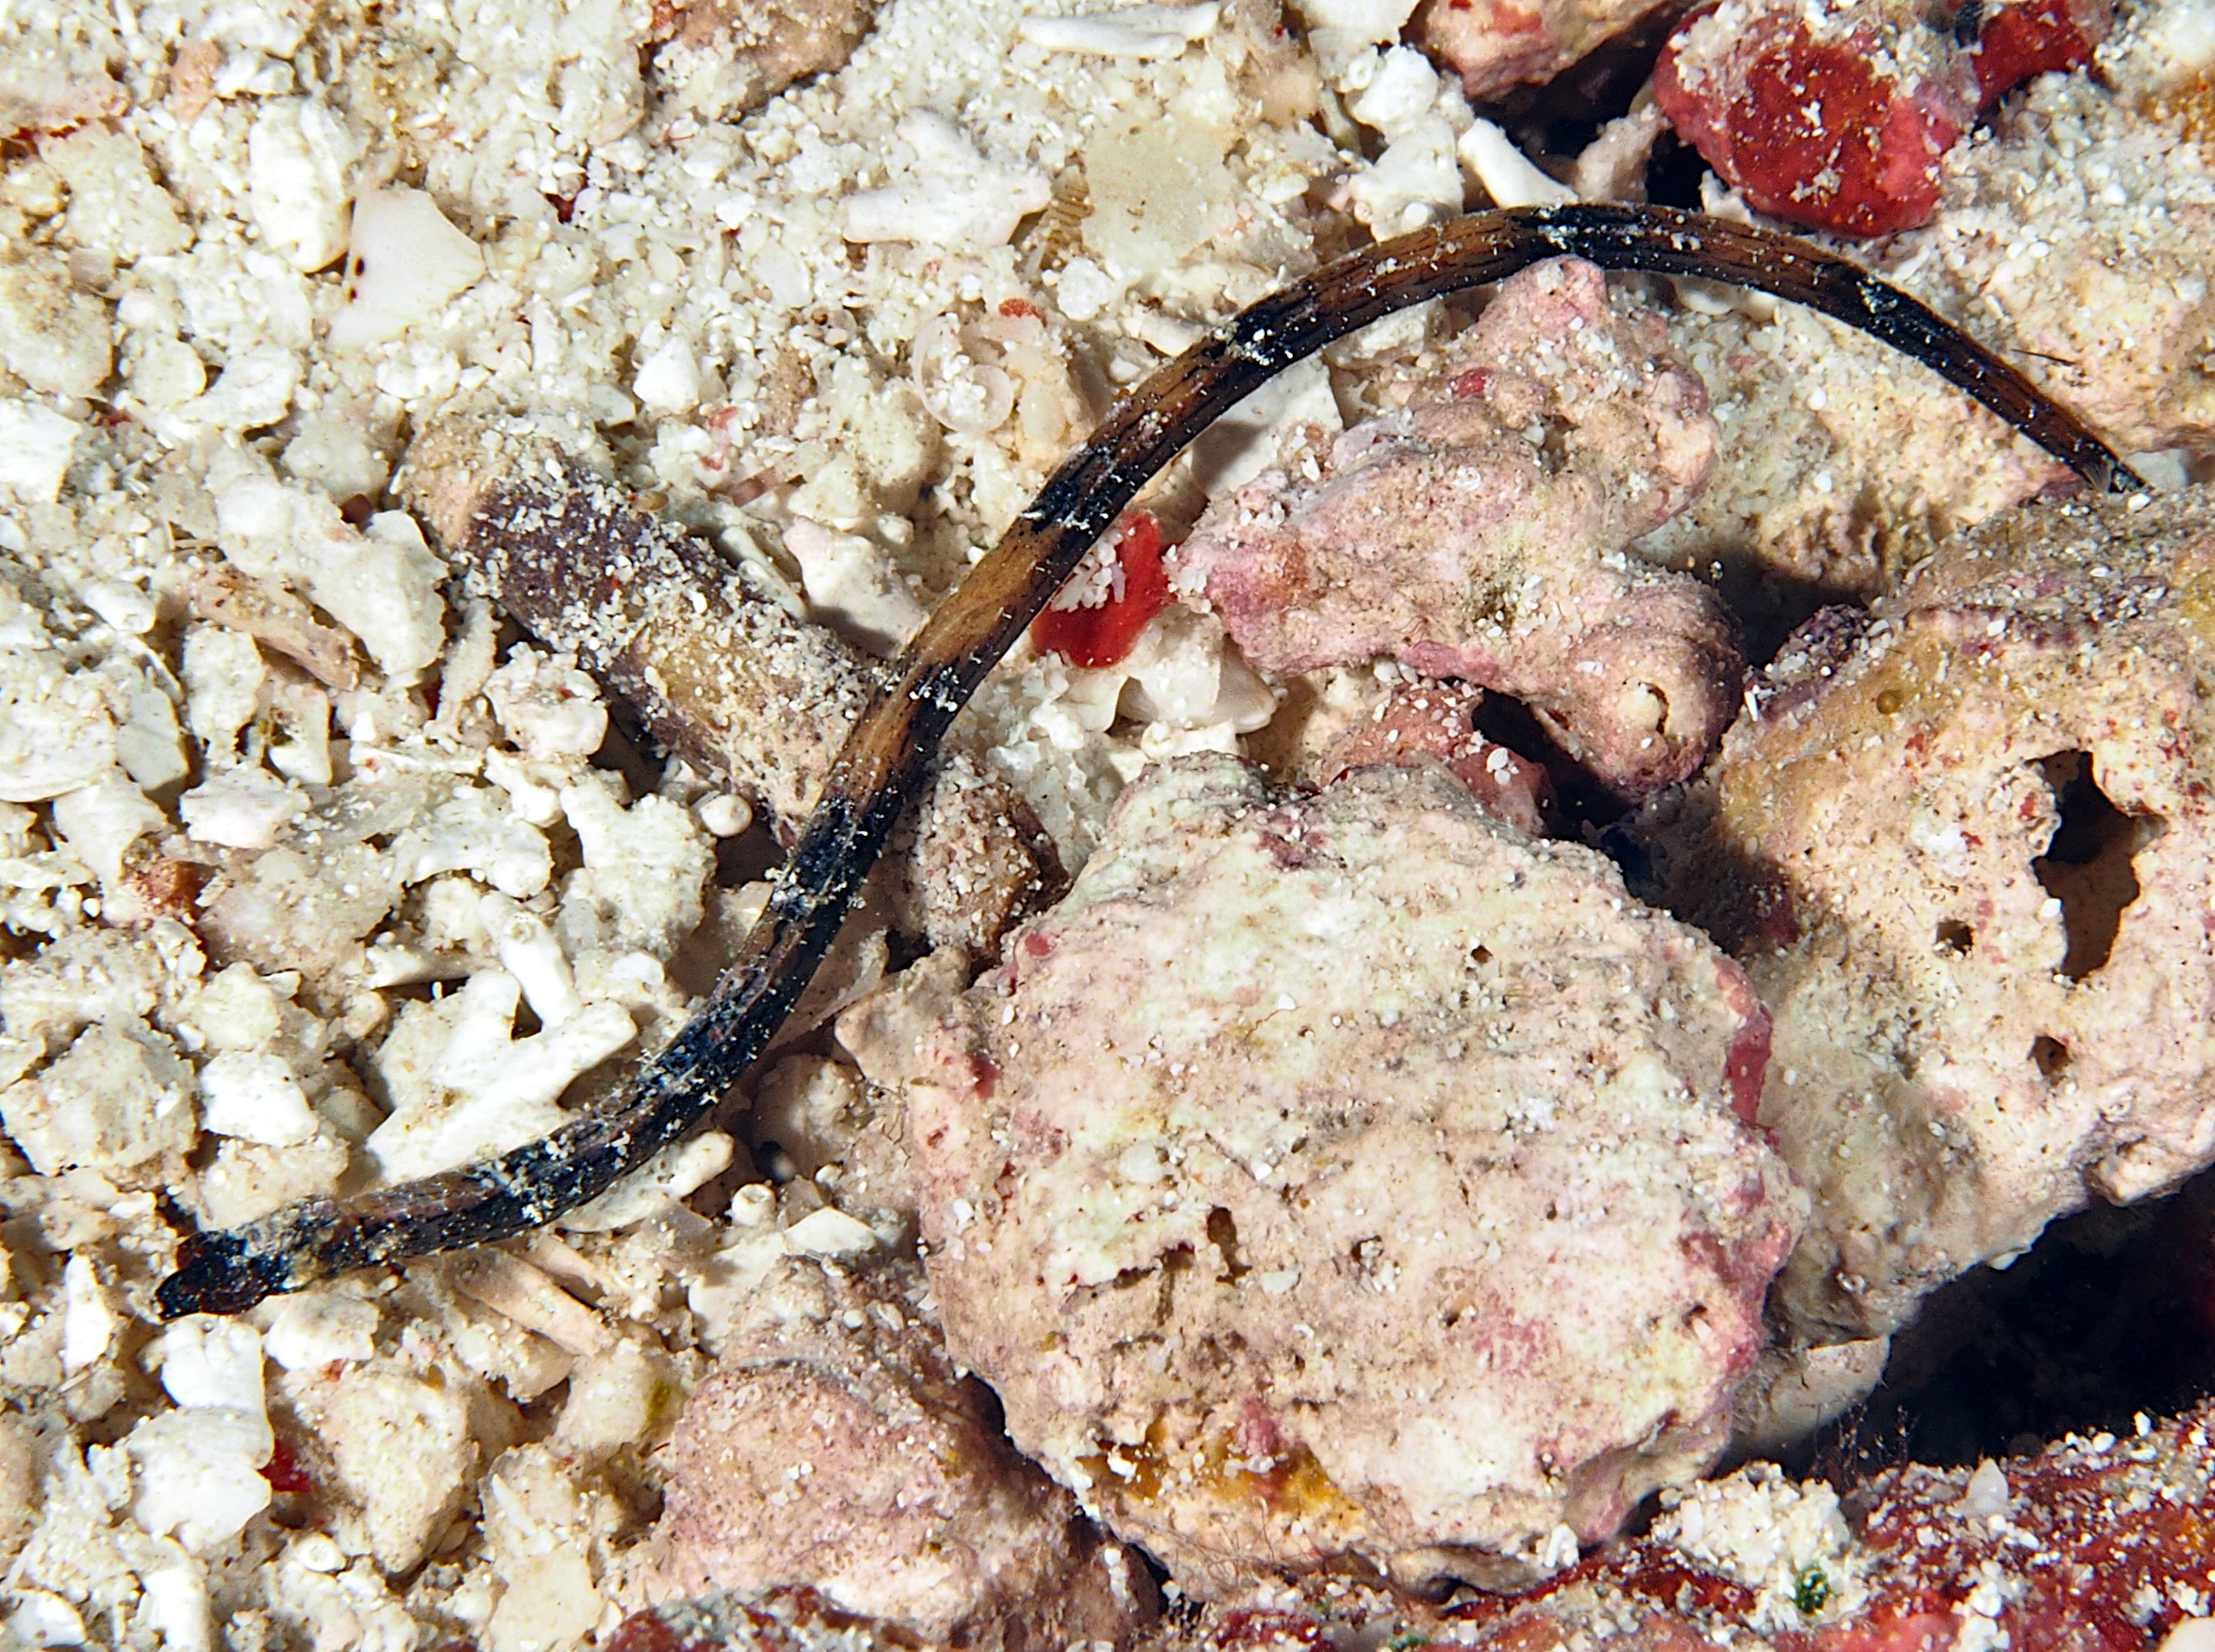 Shortnose Pipefish - Micrognathus andersonii